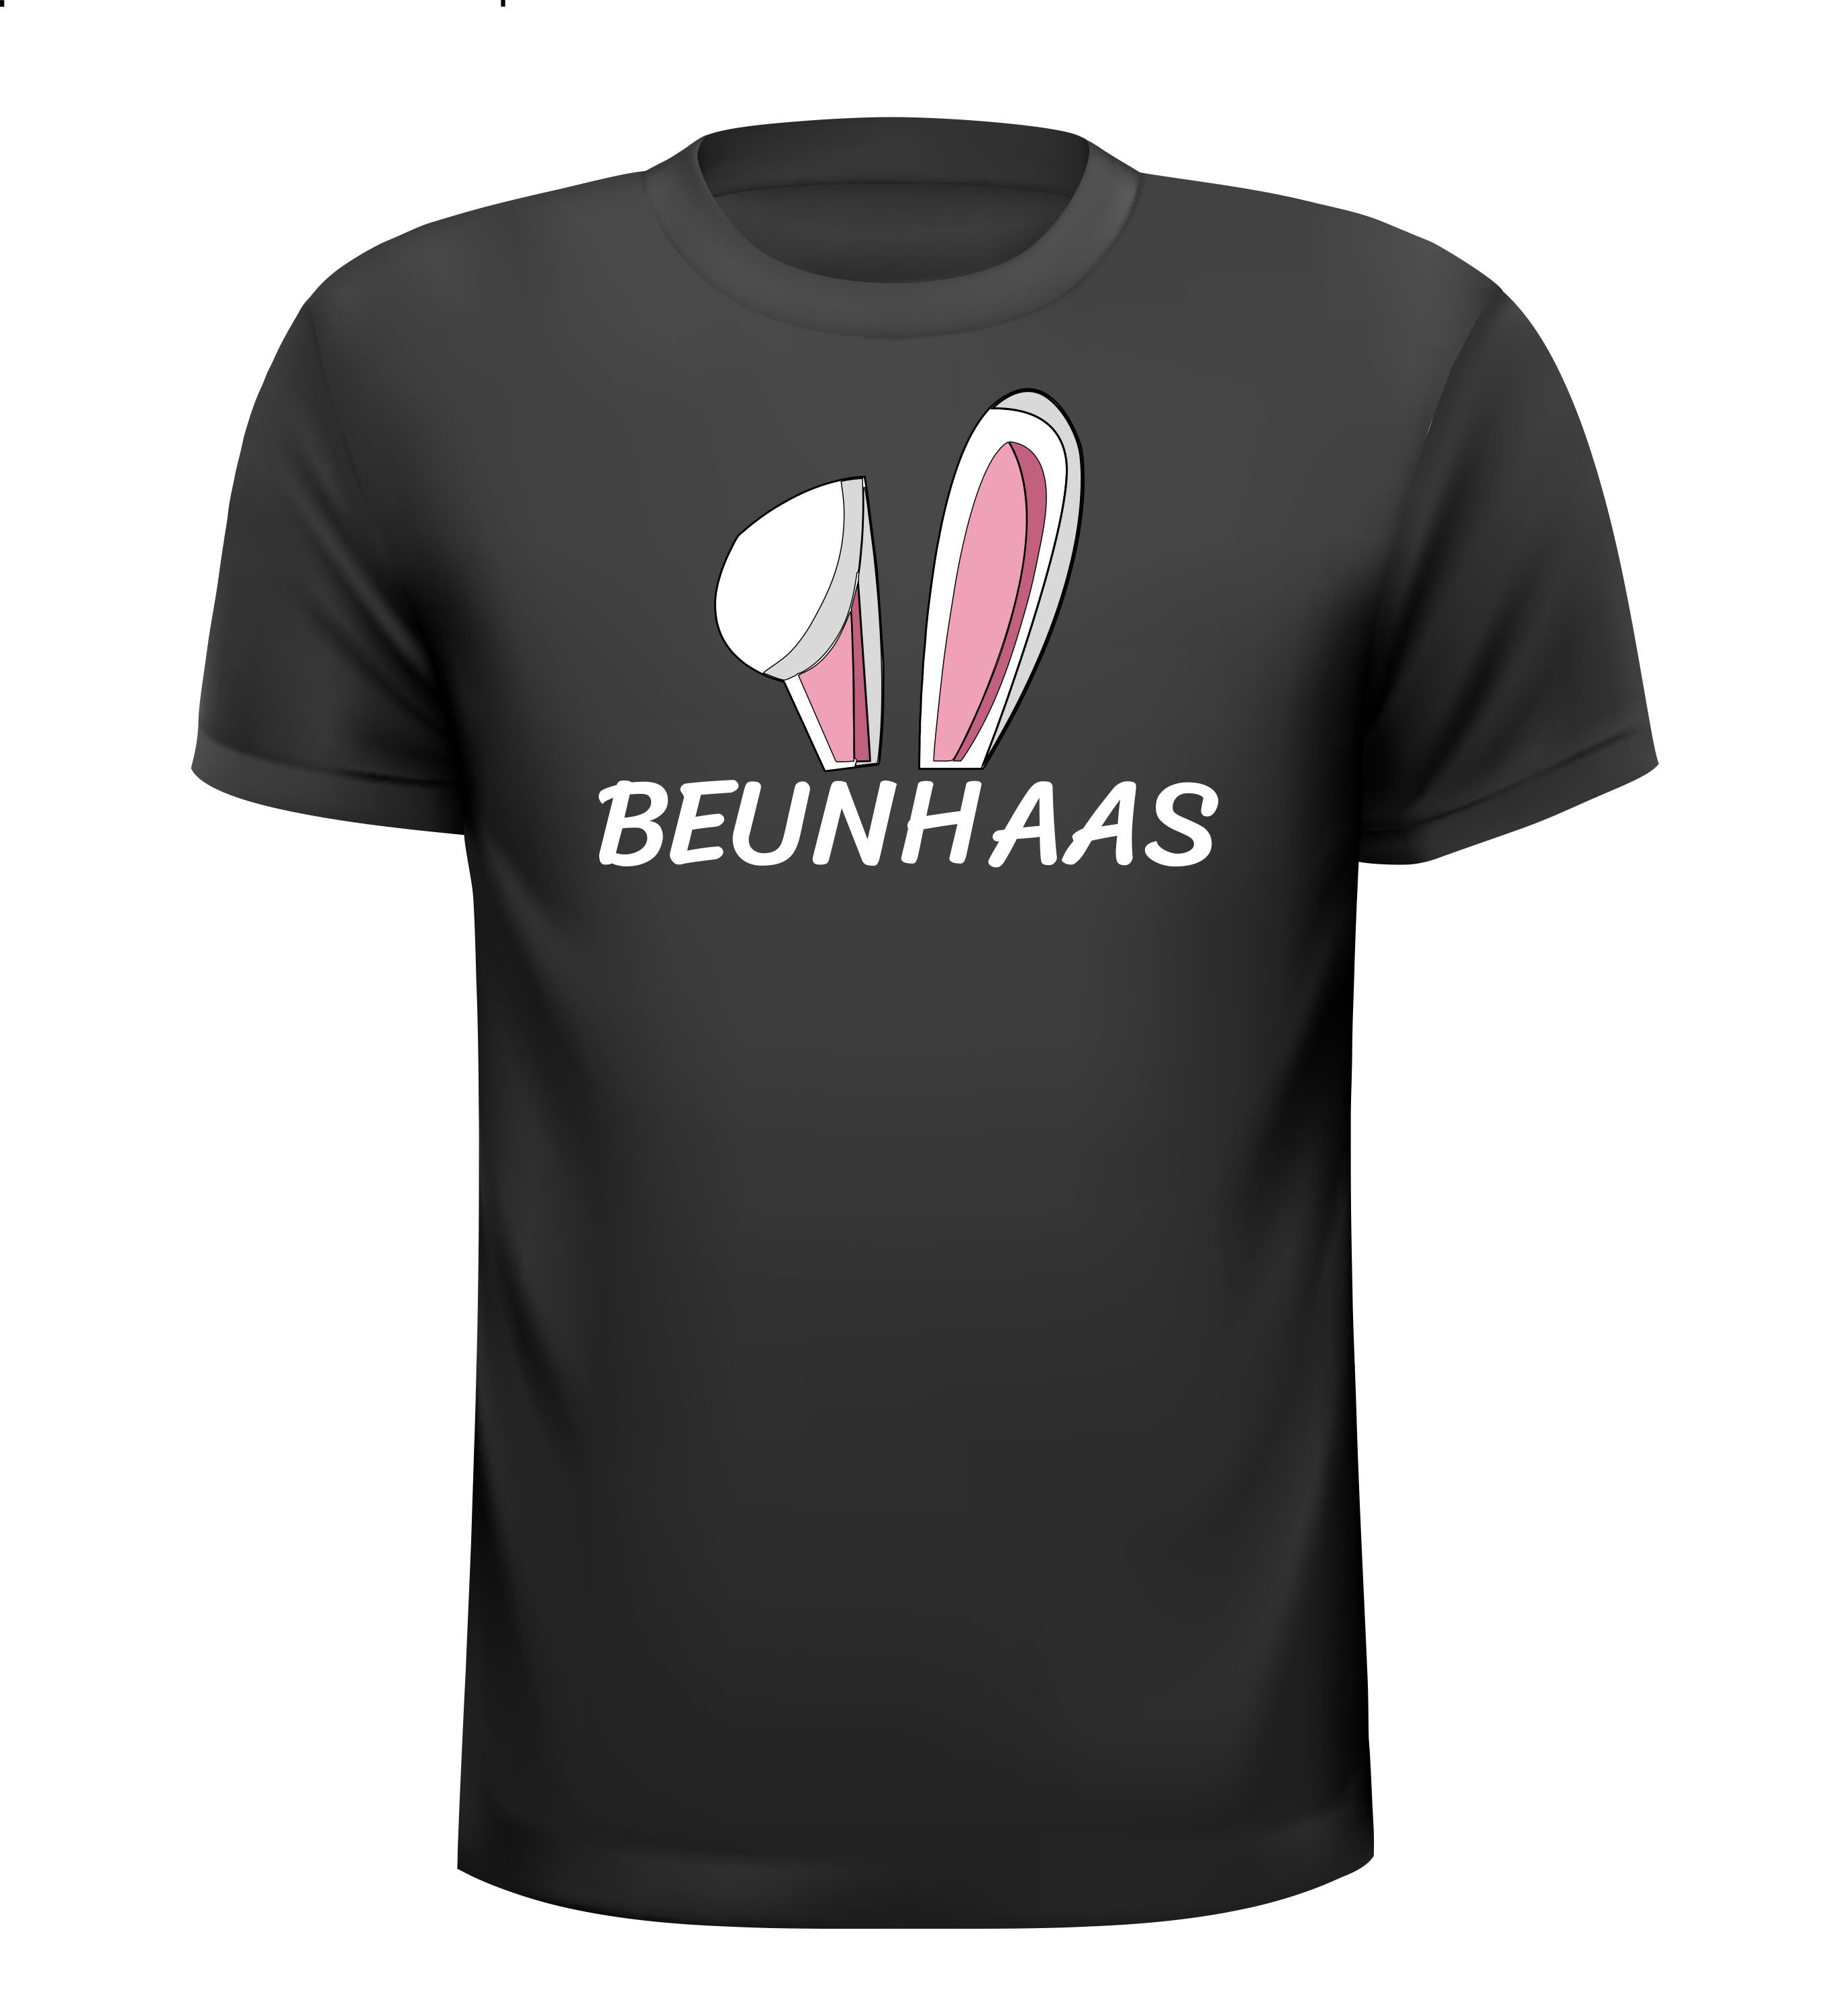 T-shirt voor een echte Beunhaas